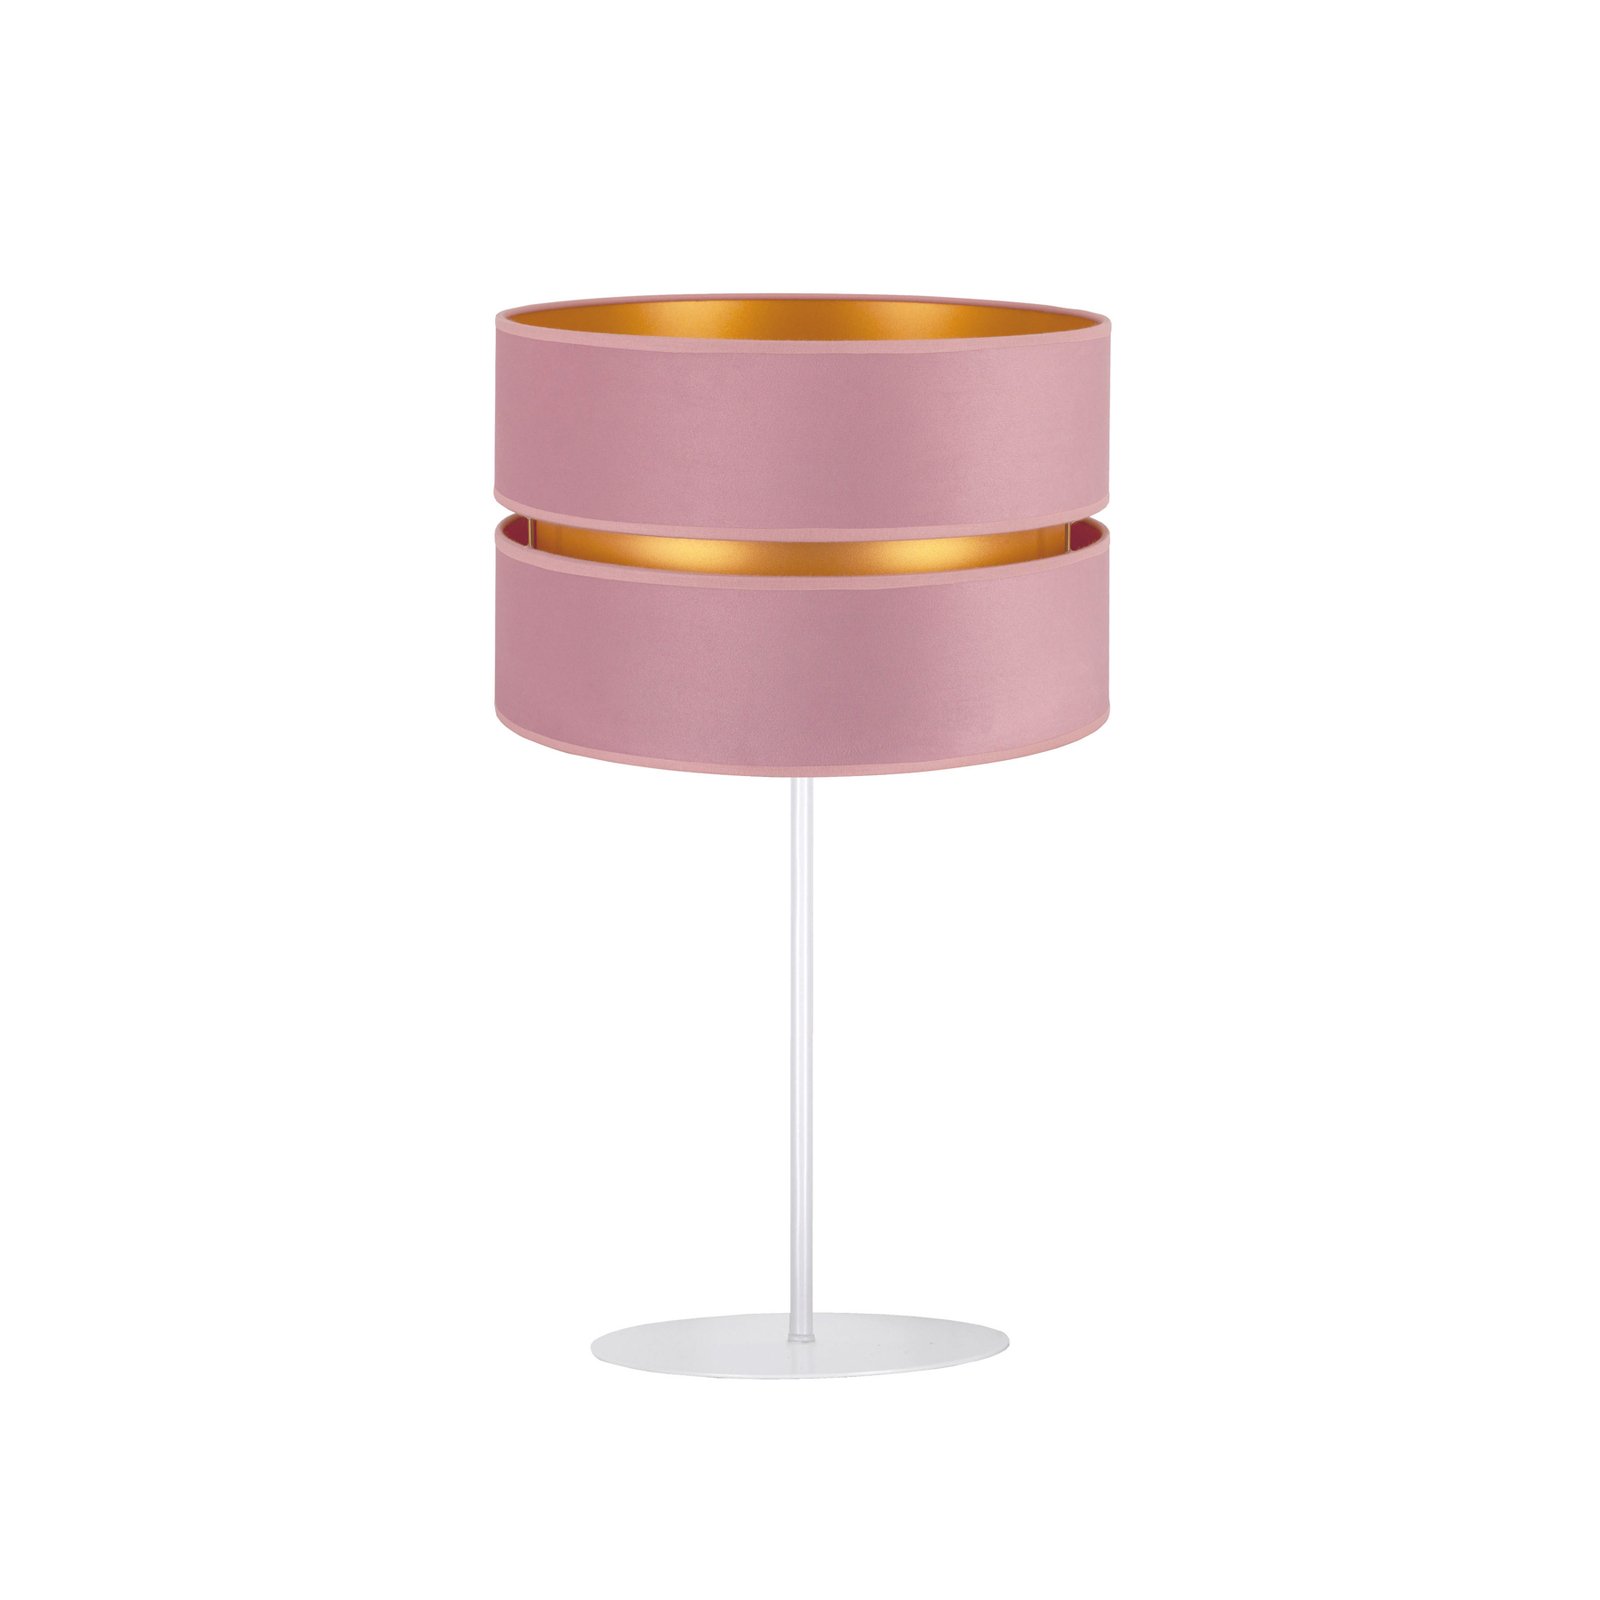 Pöytälamppu Golden Duo korkeus 50 cm, roosa/kulta